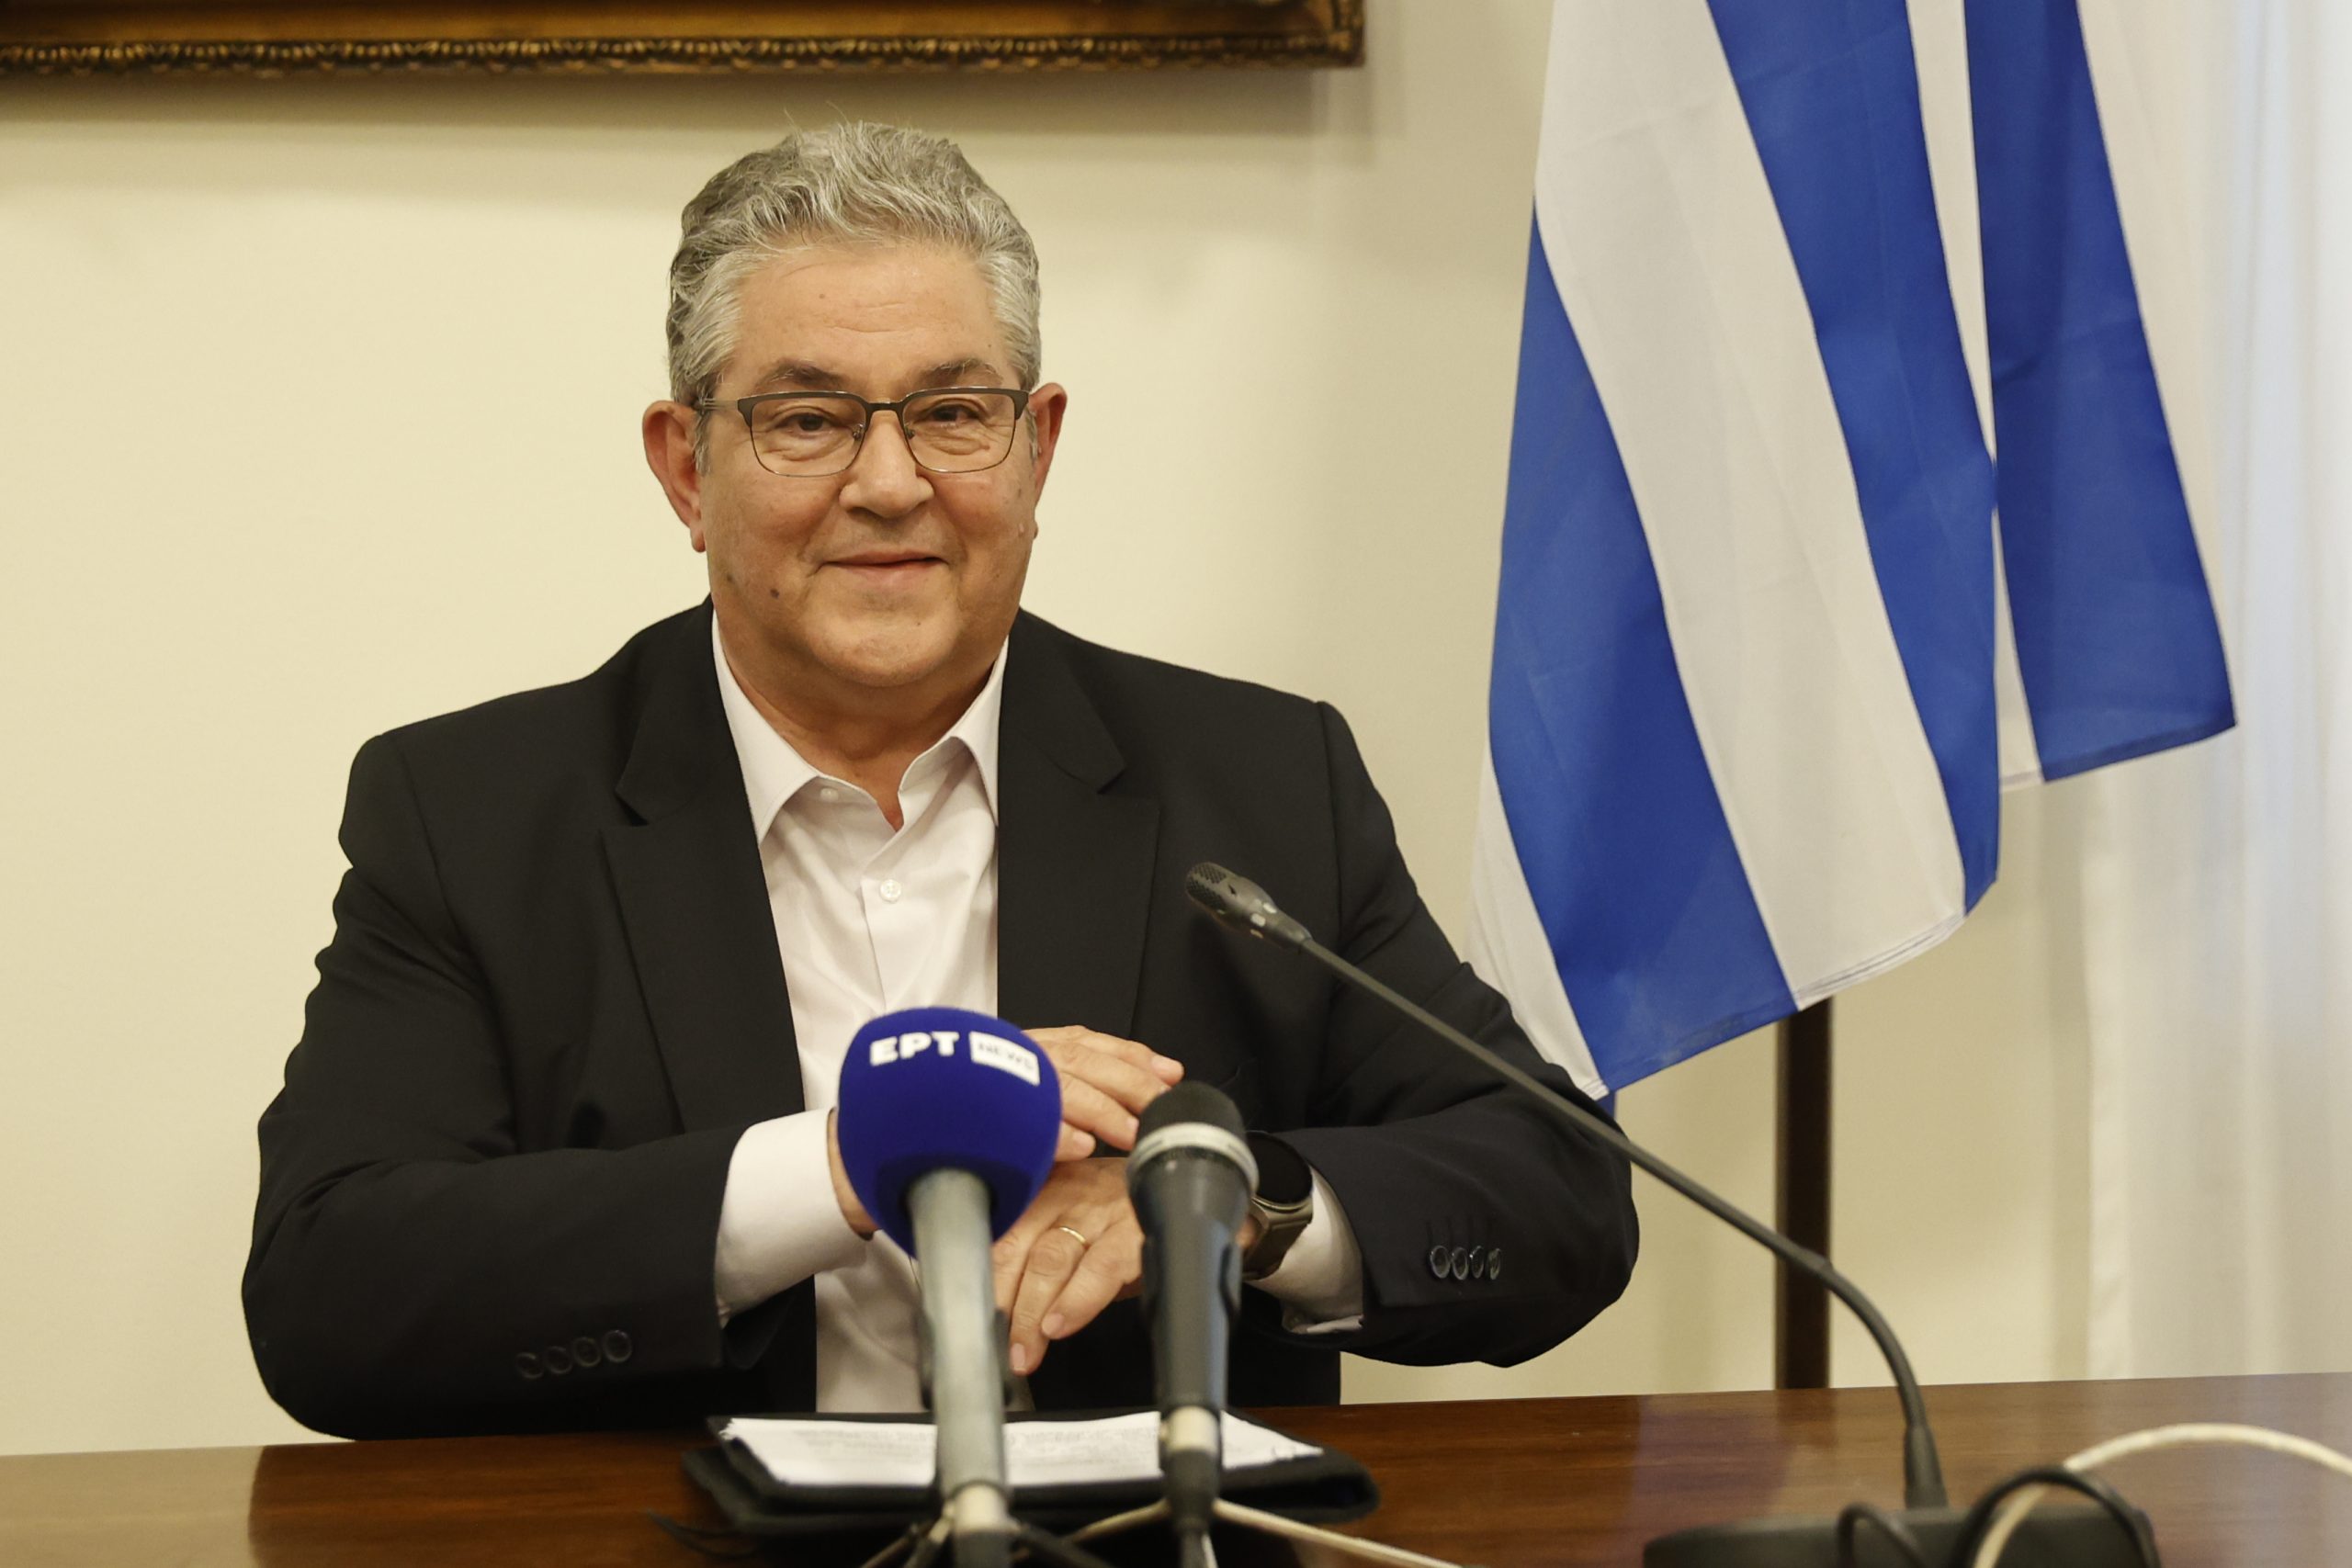 Δ.Κουτσούμπας: «Ο ελληνικός λαός χρειάζεται μια ισχυρή αντιπολίτευση με πολύ πιο δυνατό ΚΚΕ»